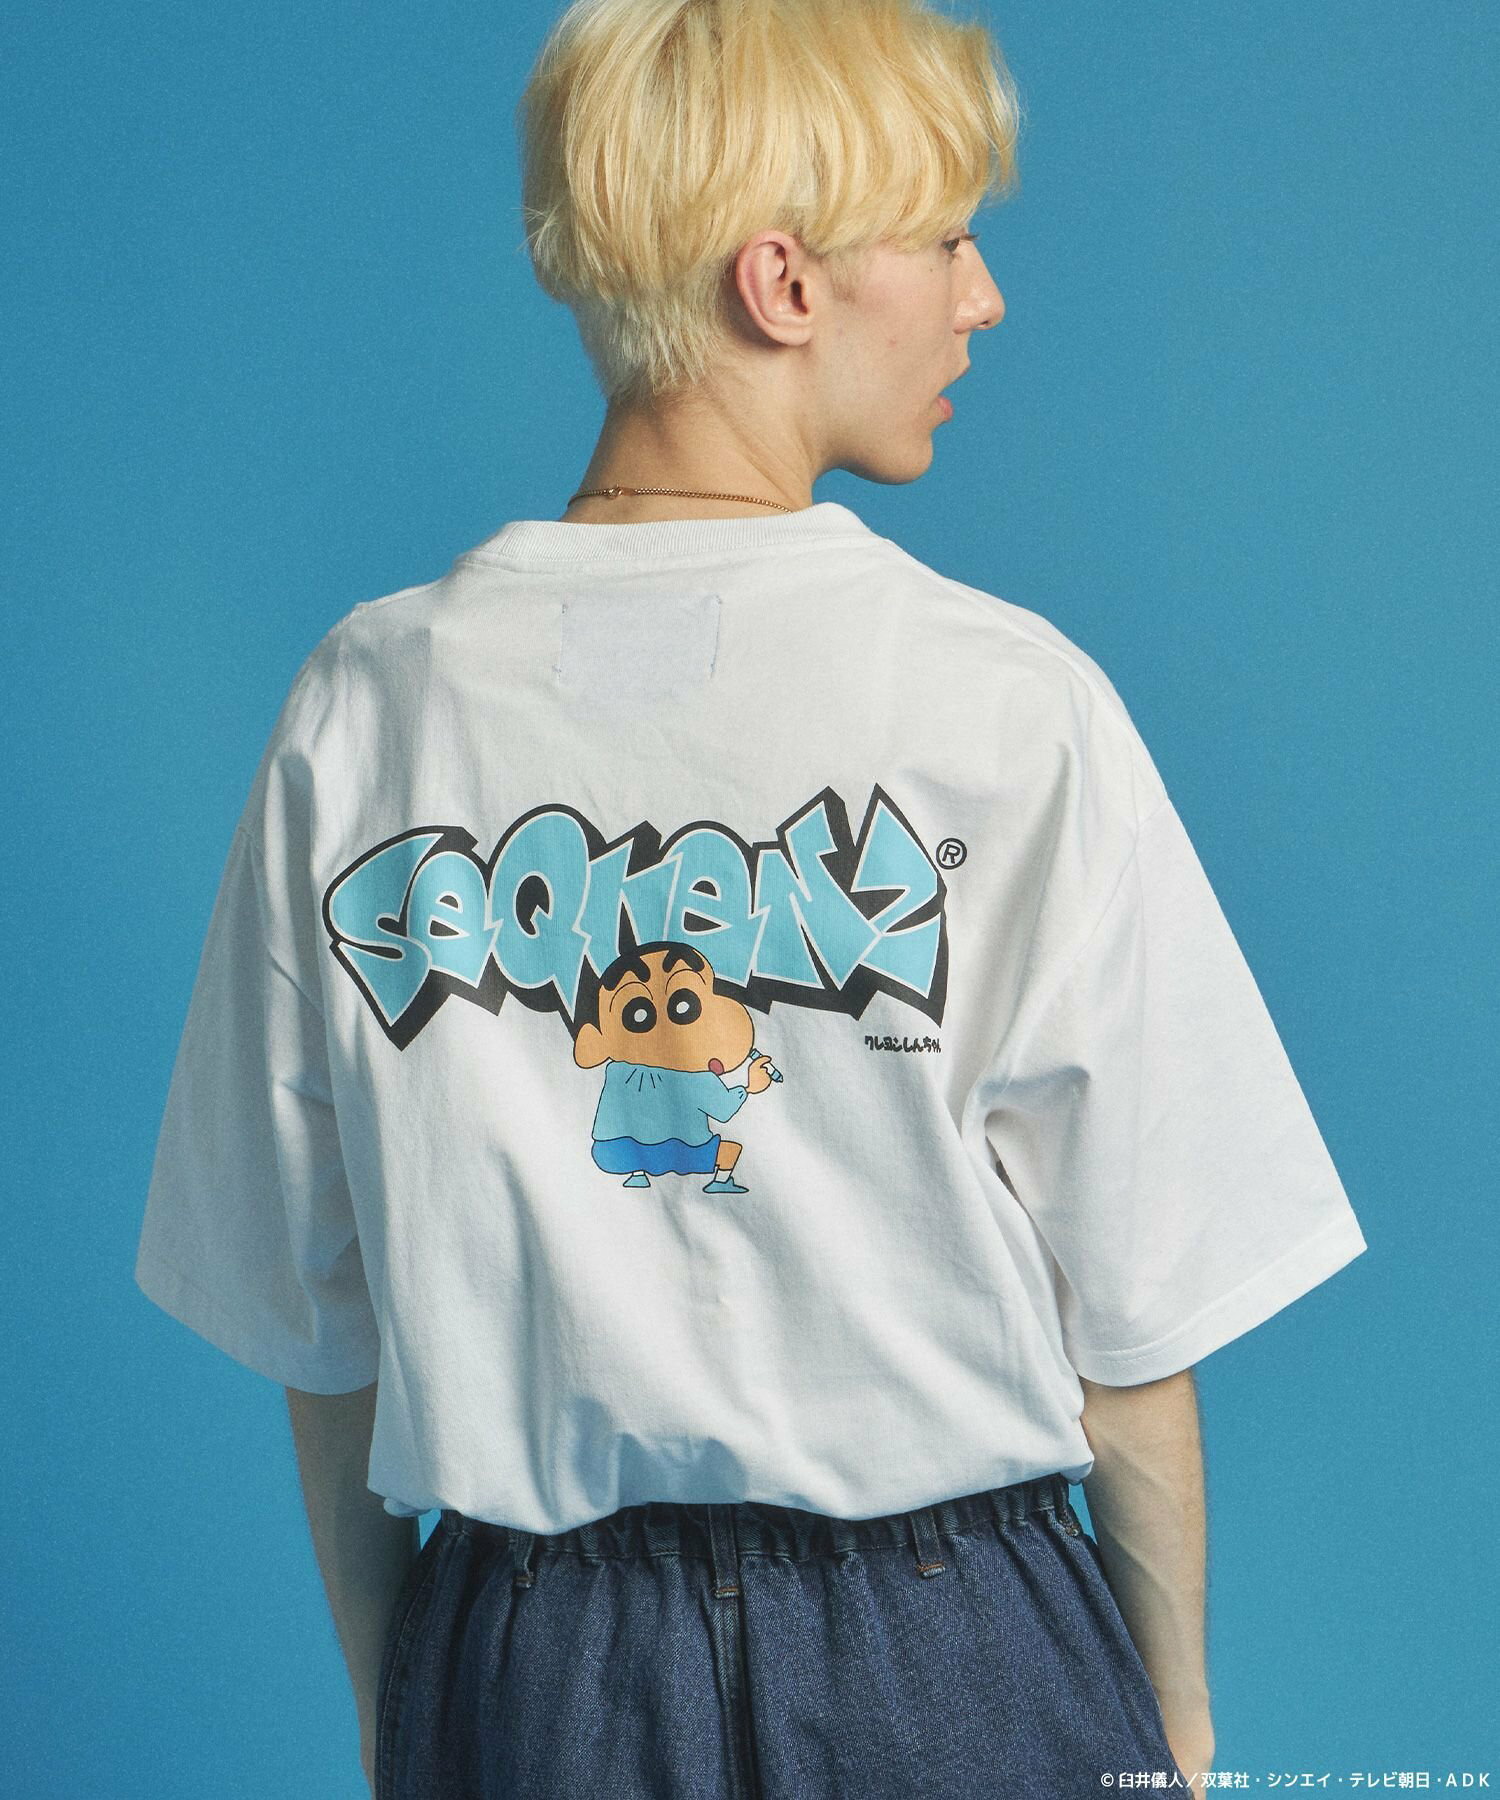 【SEQUENZ】CS*SQNZ GRAFFITI S/S TEE / クレヨンしんちゃん 半袖Tシャツ クルーネック ワンポイント バックプリント 刺繍